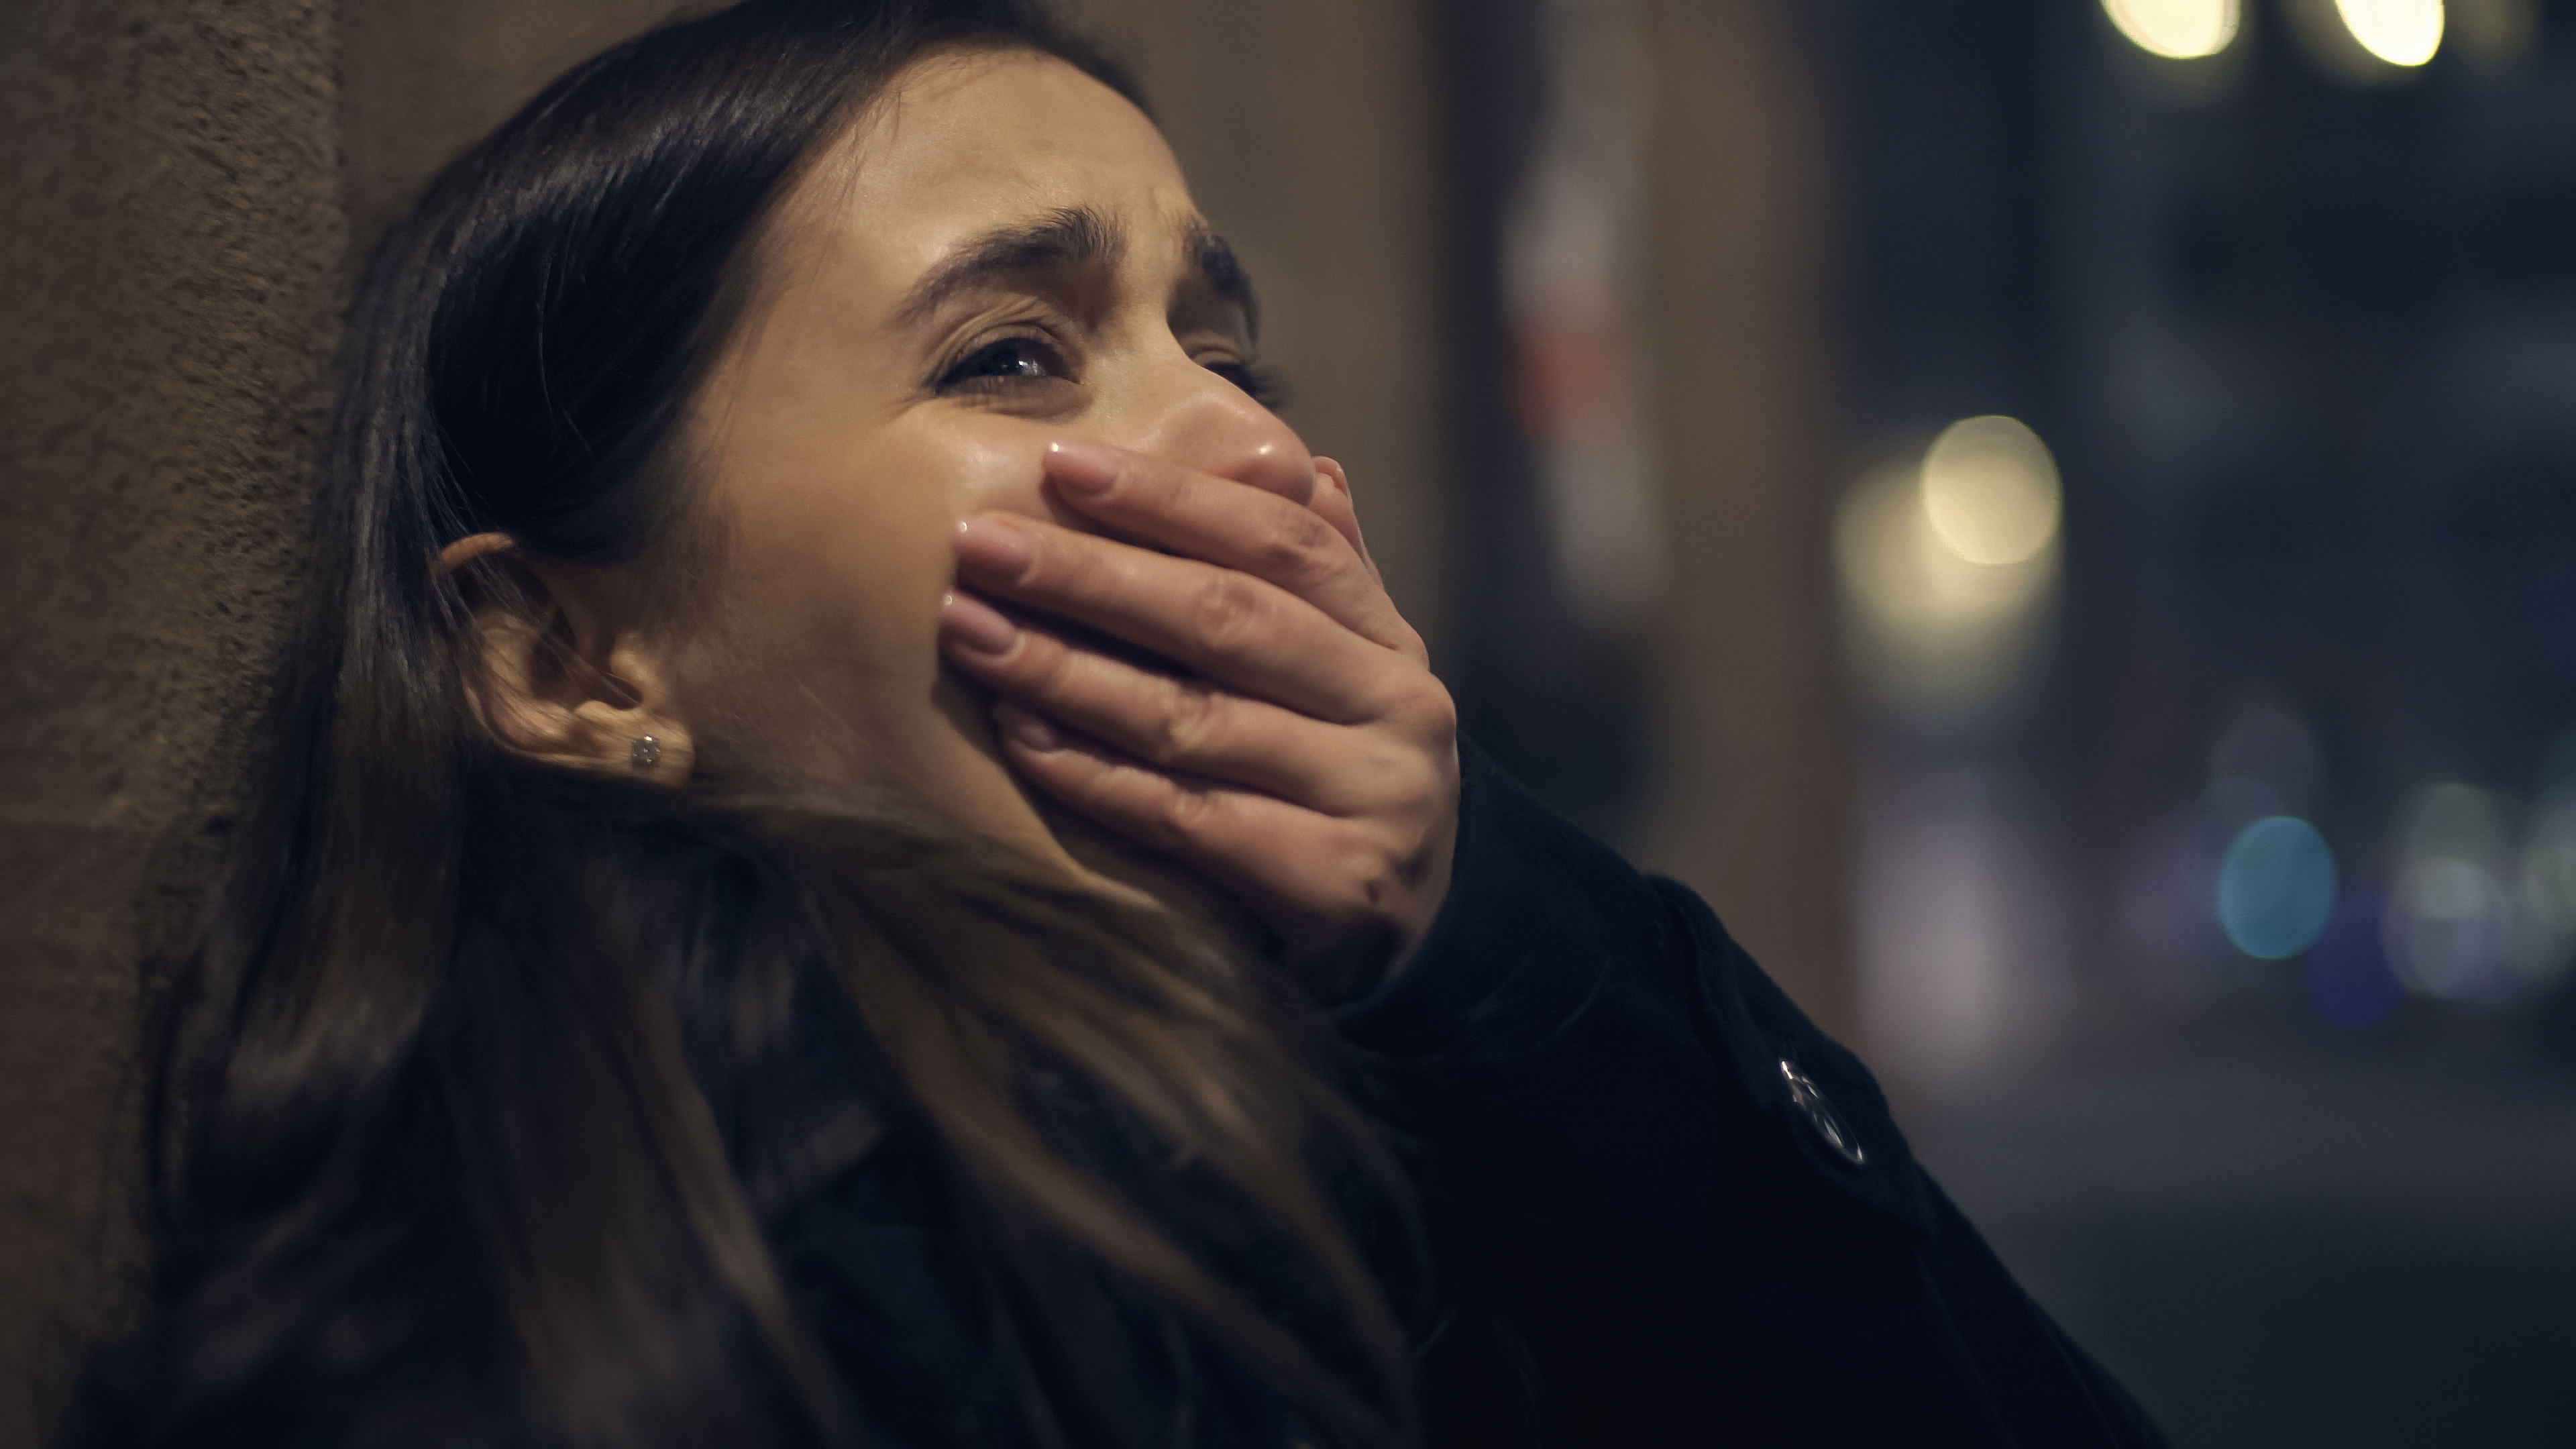 Una mujer asustada llora con la mano tapándose la boca | Fuente: Shutterstock